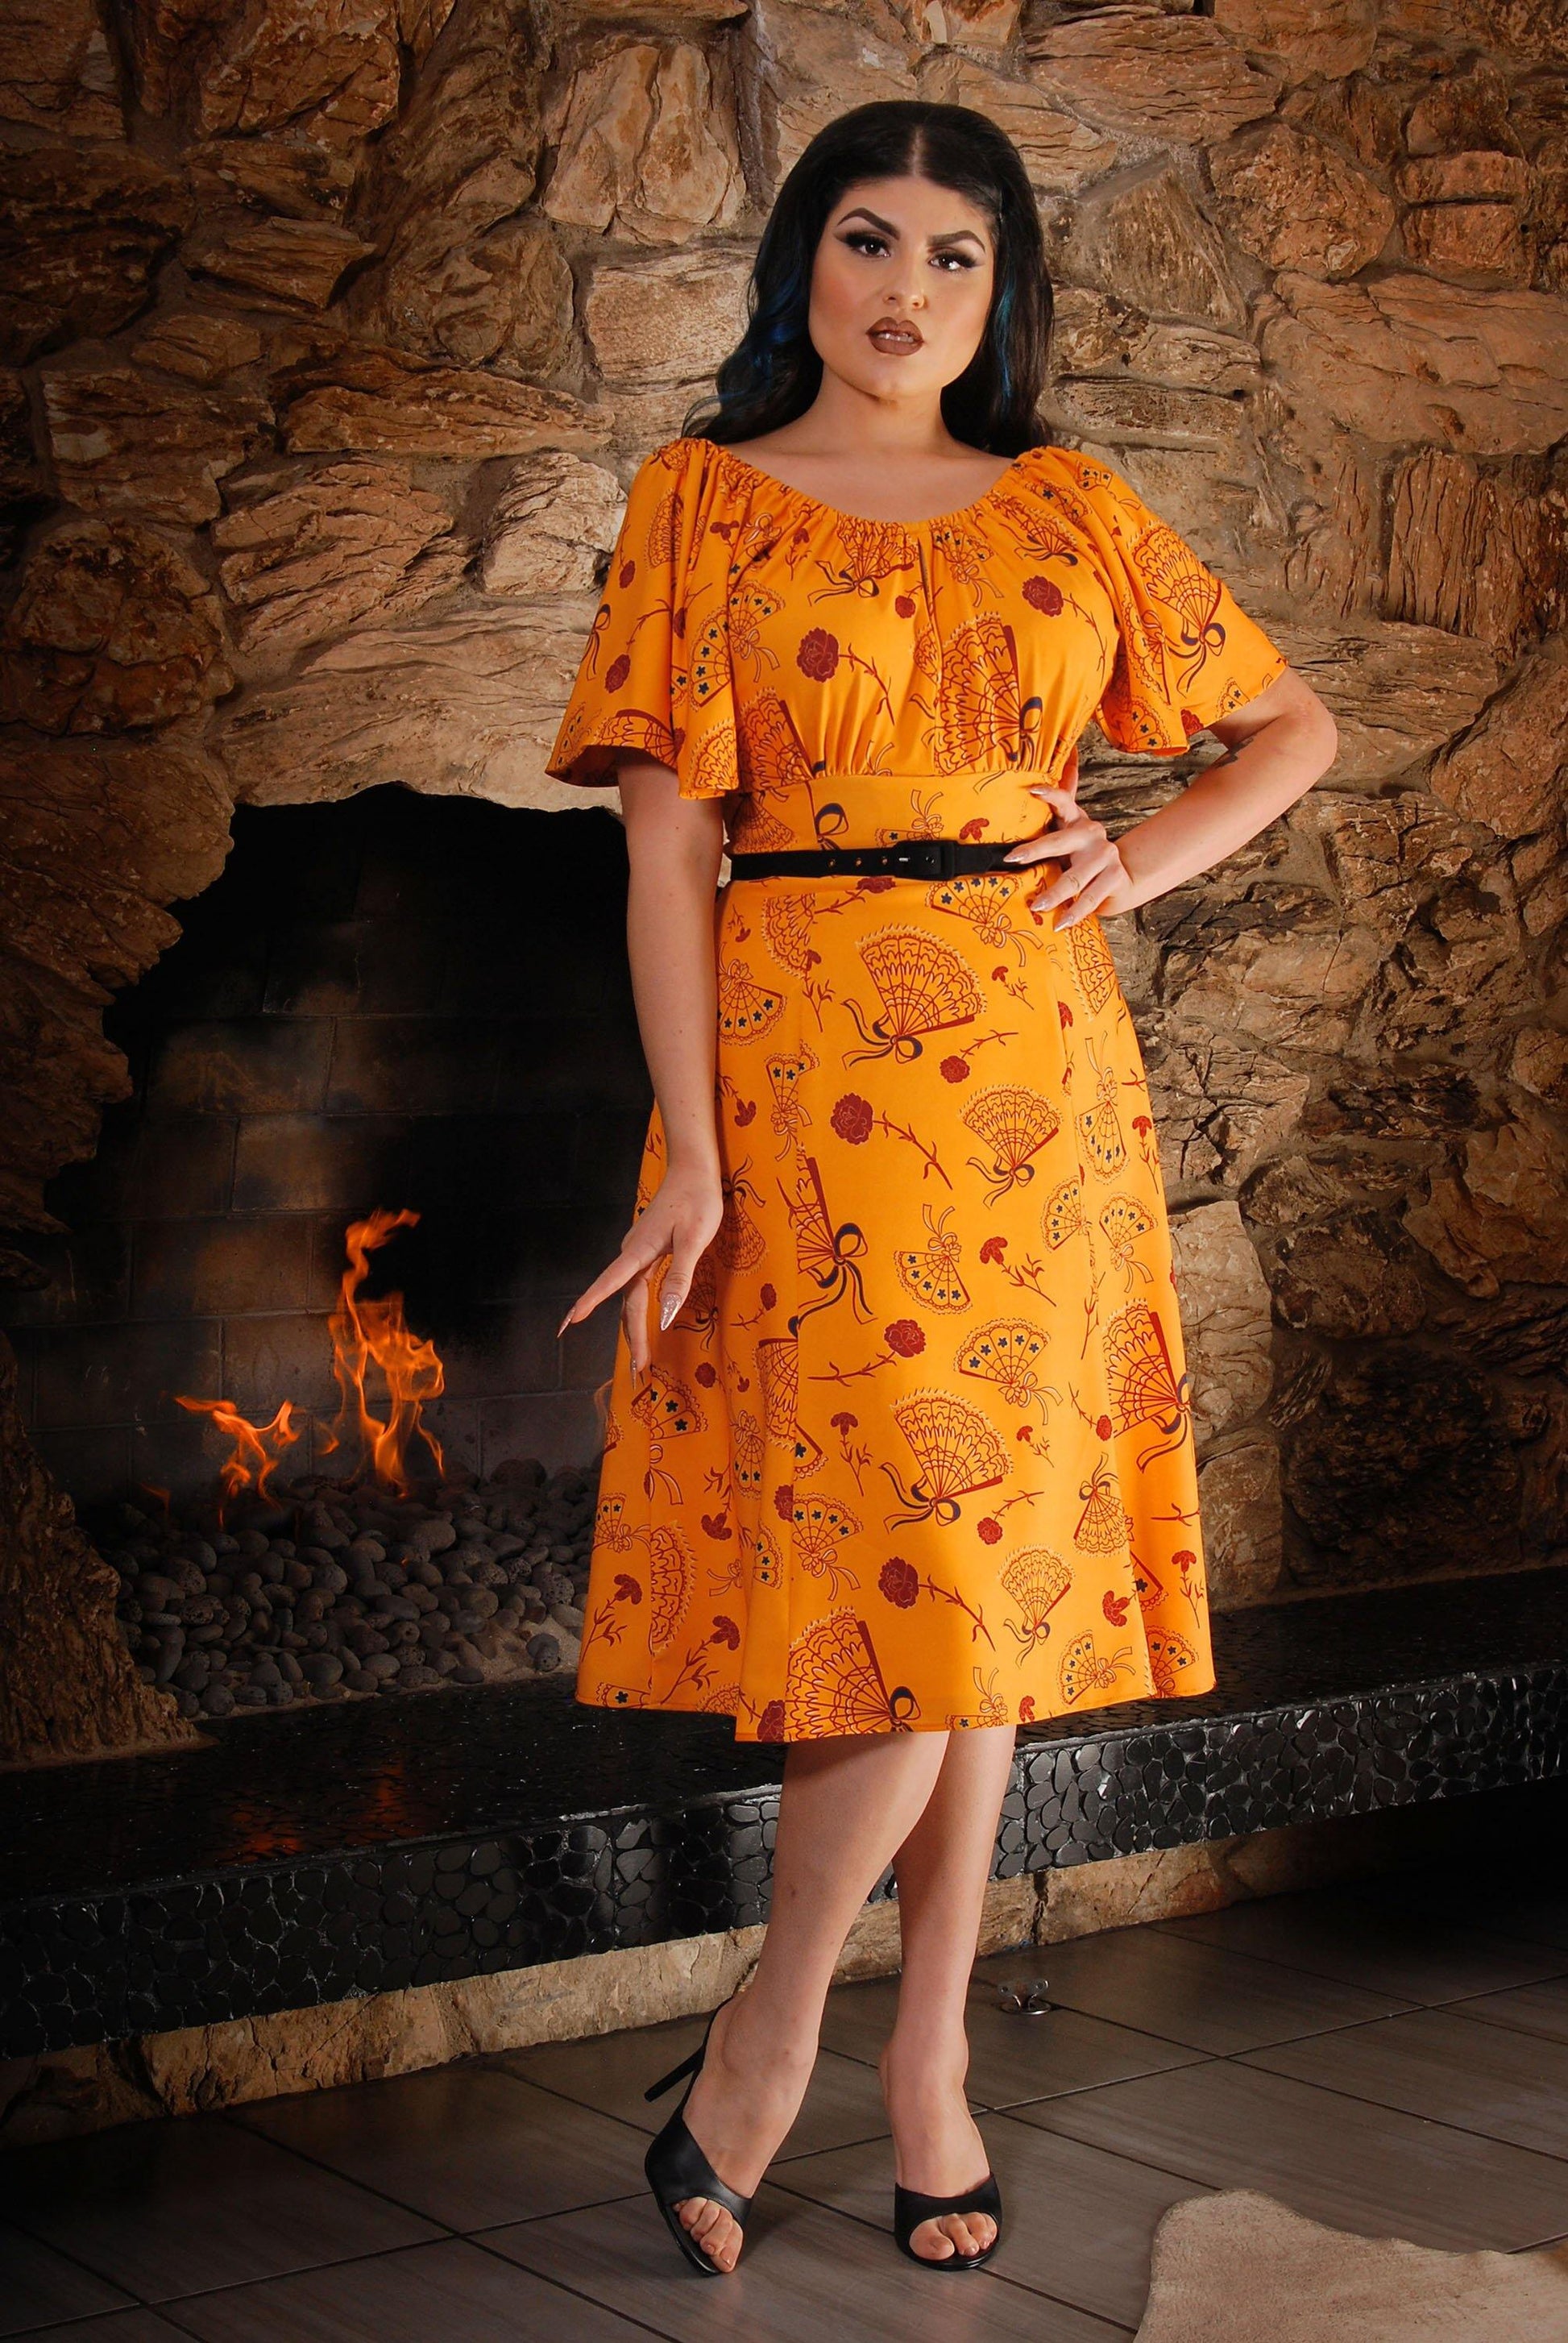 Butterfly Dress in Mustard Spanish Fans | Laura Byrnes & Hope Morrison - pinupgirlclothing.com